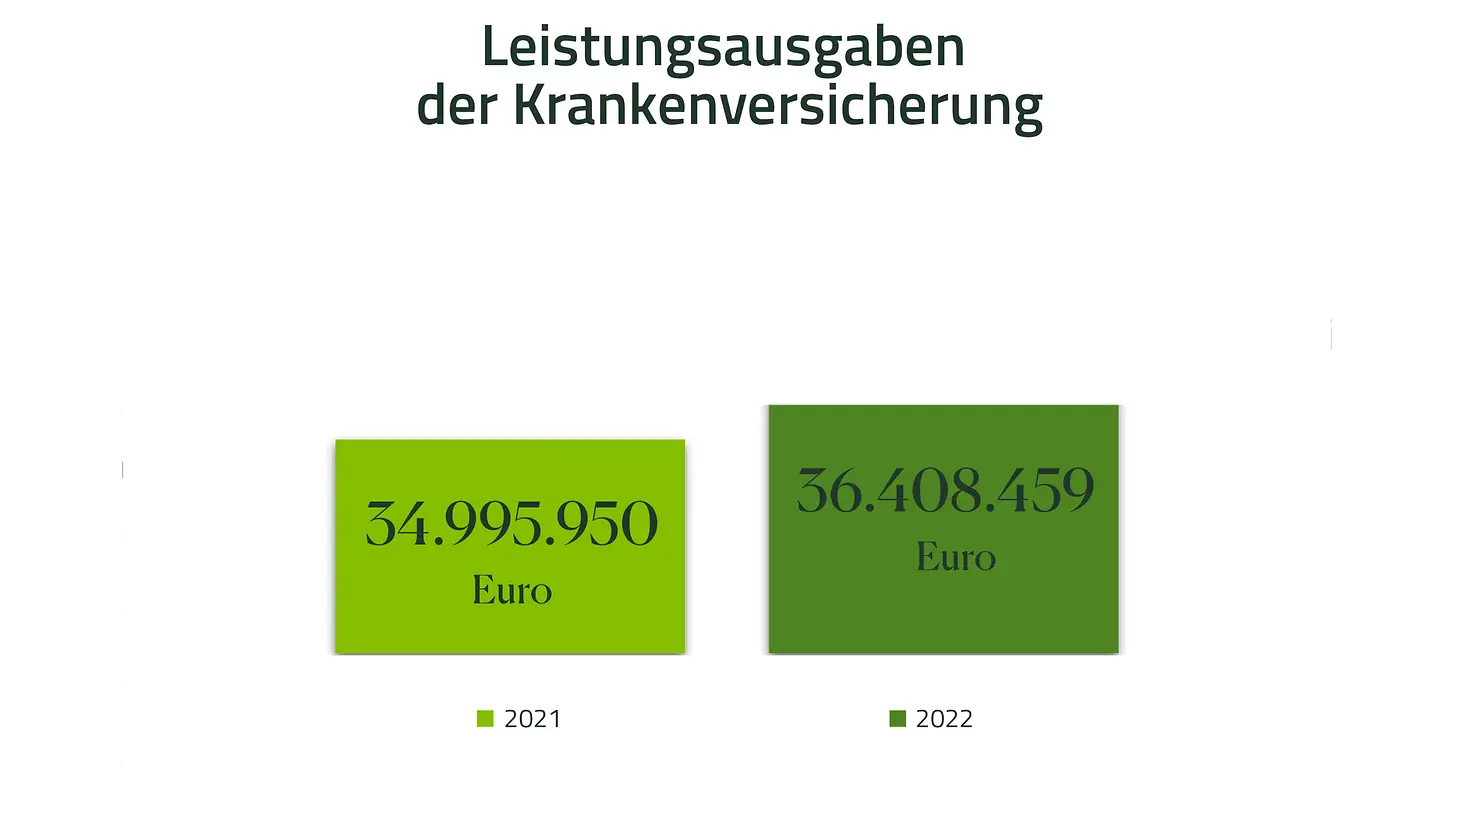 Infografik - Leistungsausgaben der Krankenkasse 2021 34995950 Euro, 2022 36408459 Euro